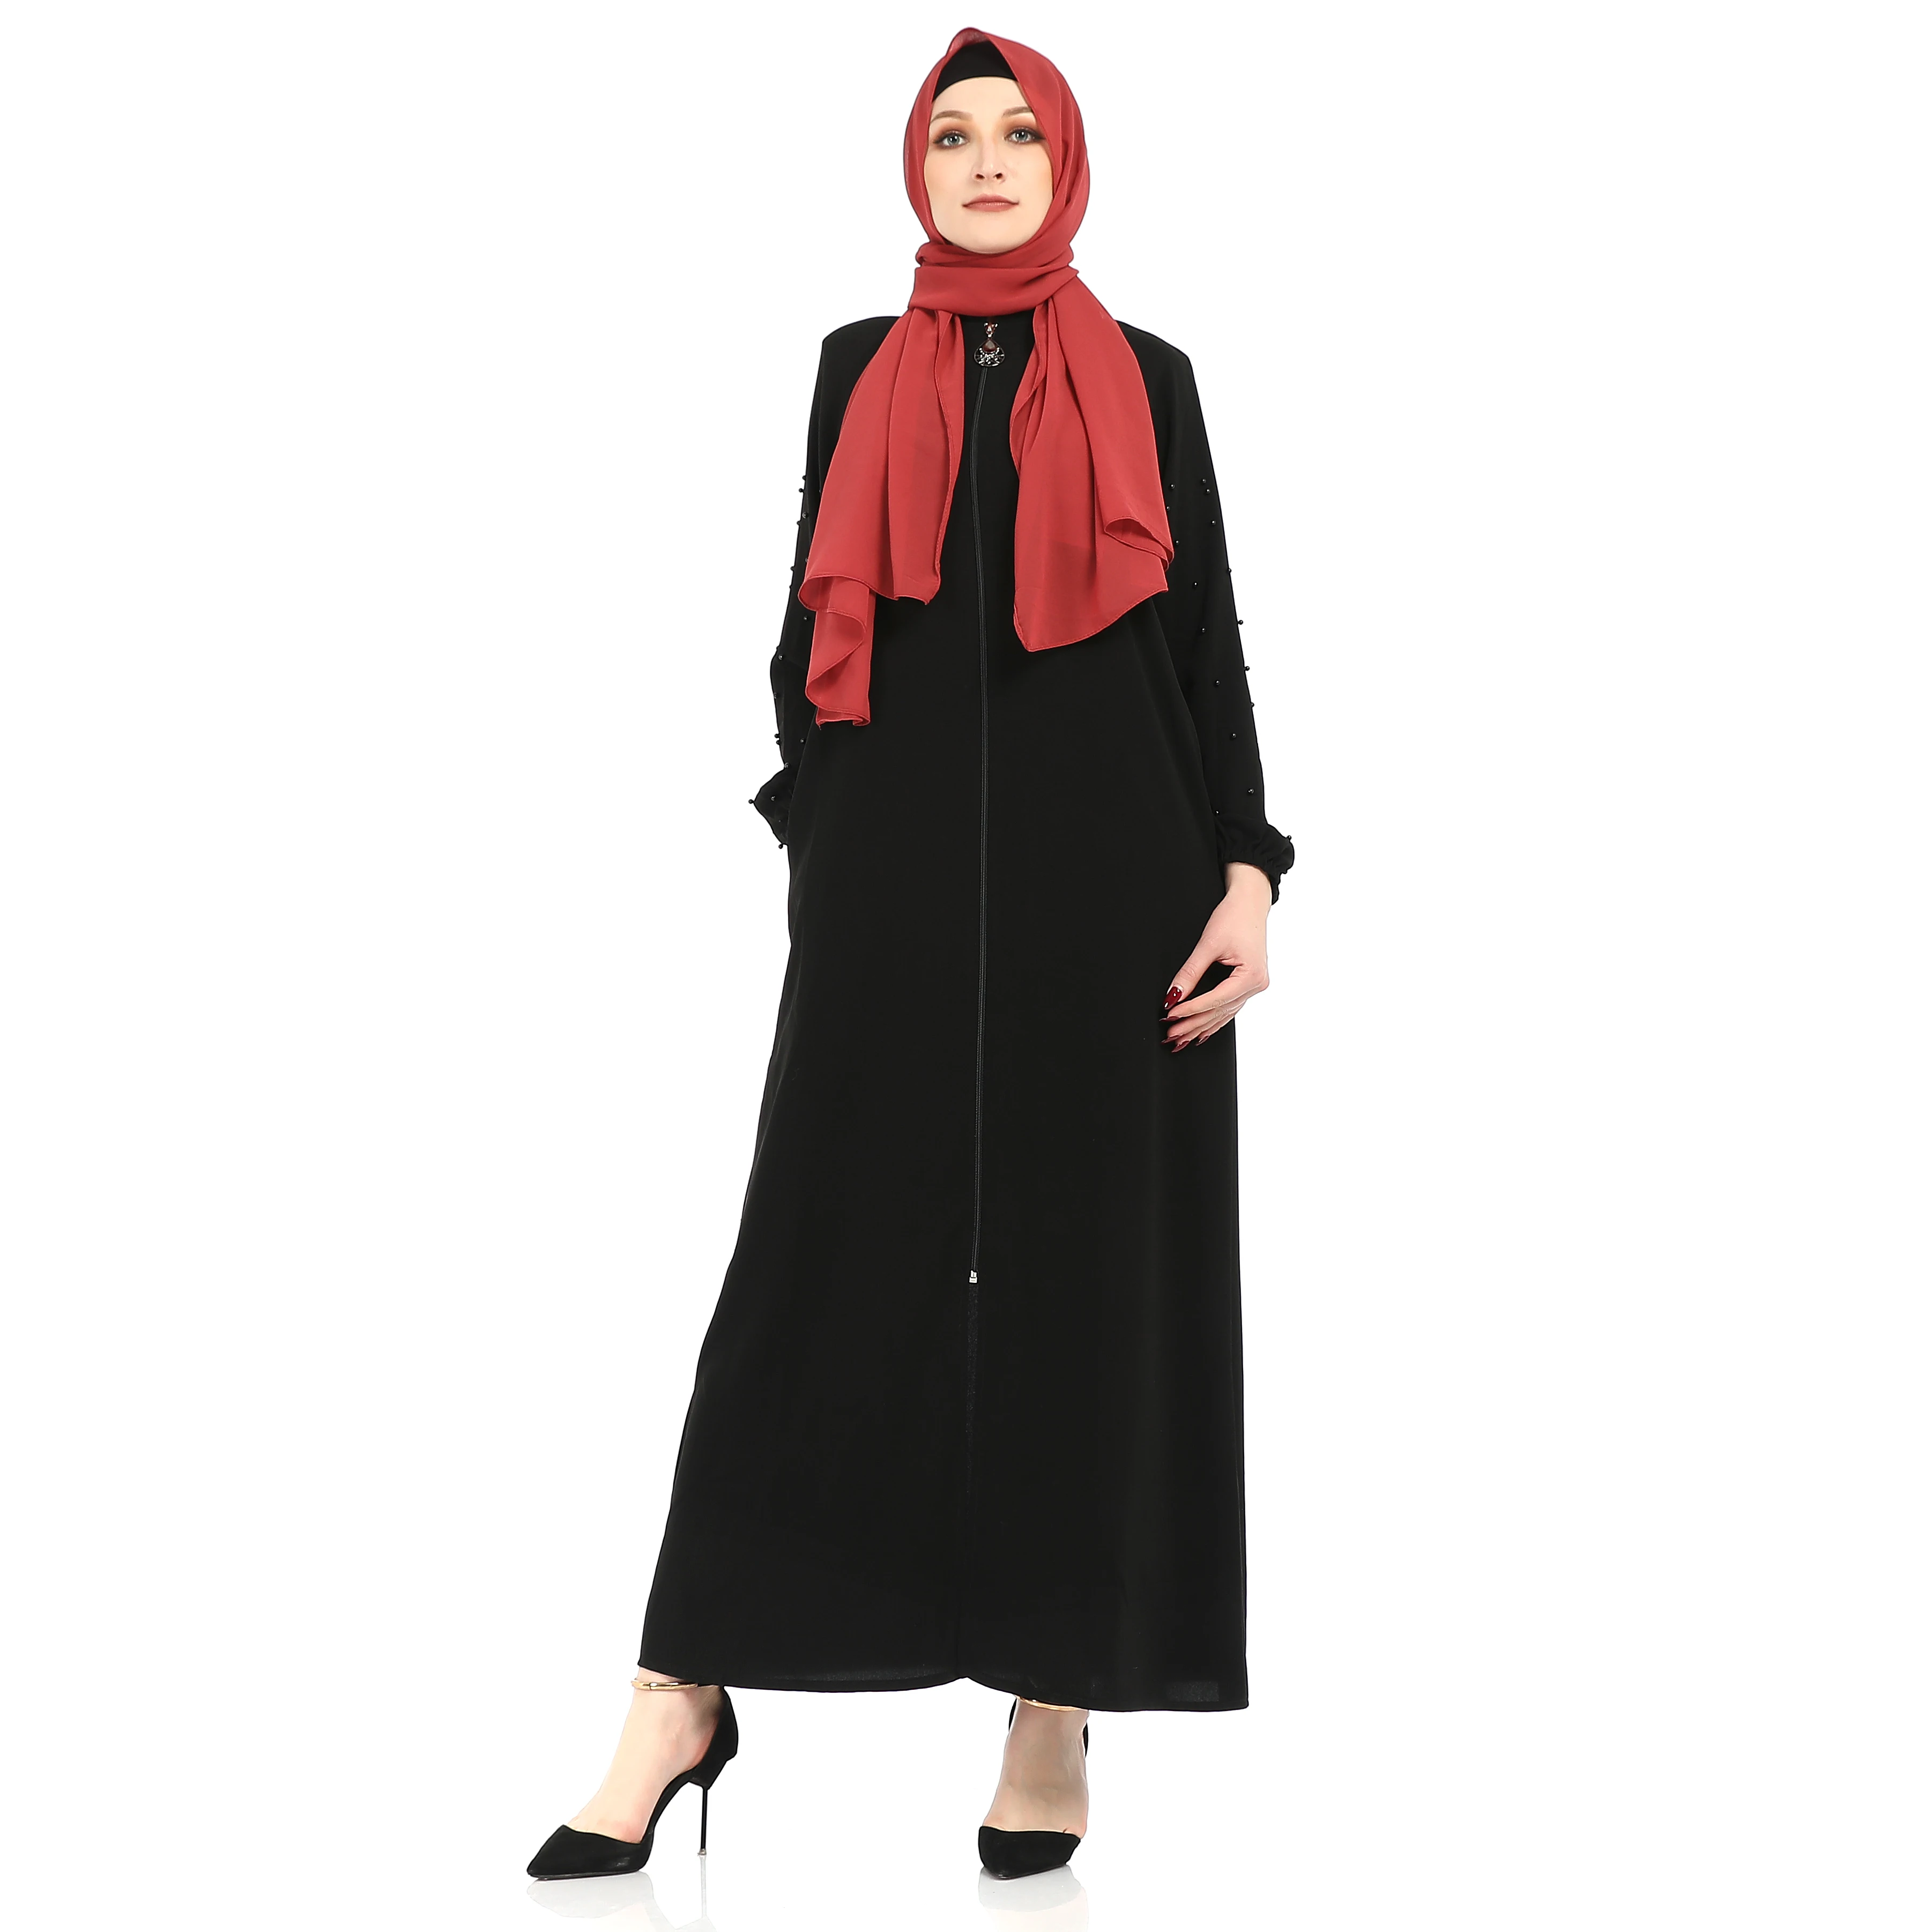 服饰 民族服饰  伊斯兰服饰  品牌名称: 高品质的穆斯林女性服鞍